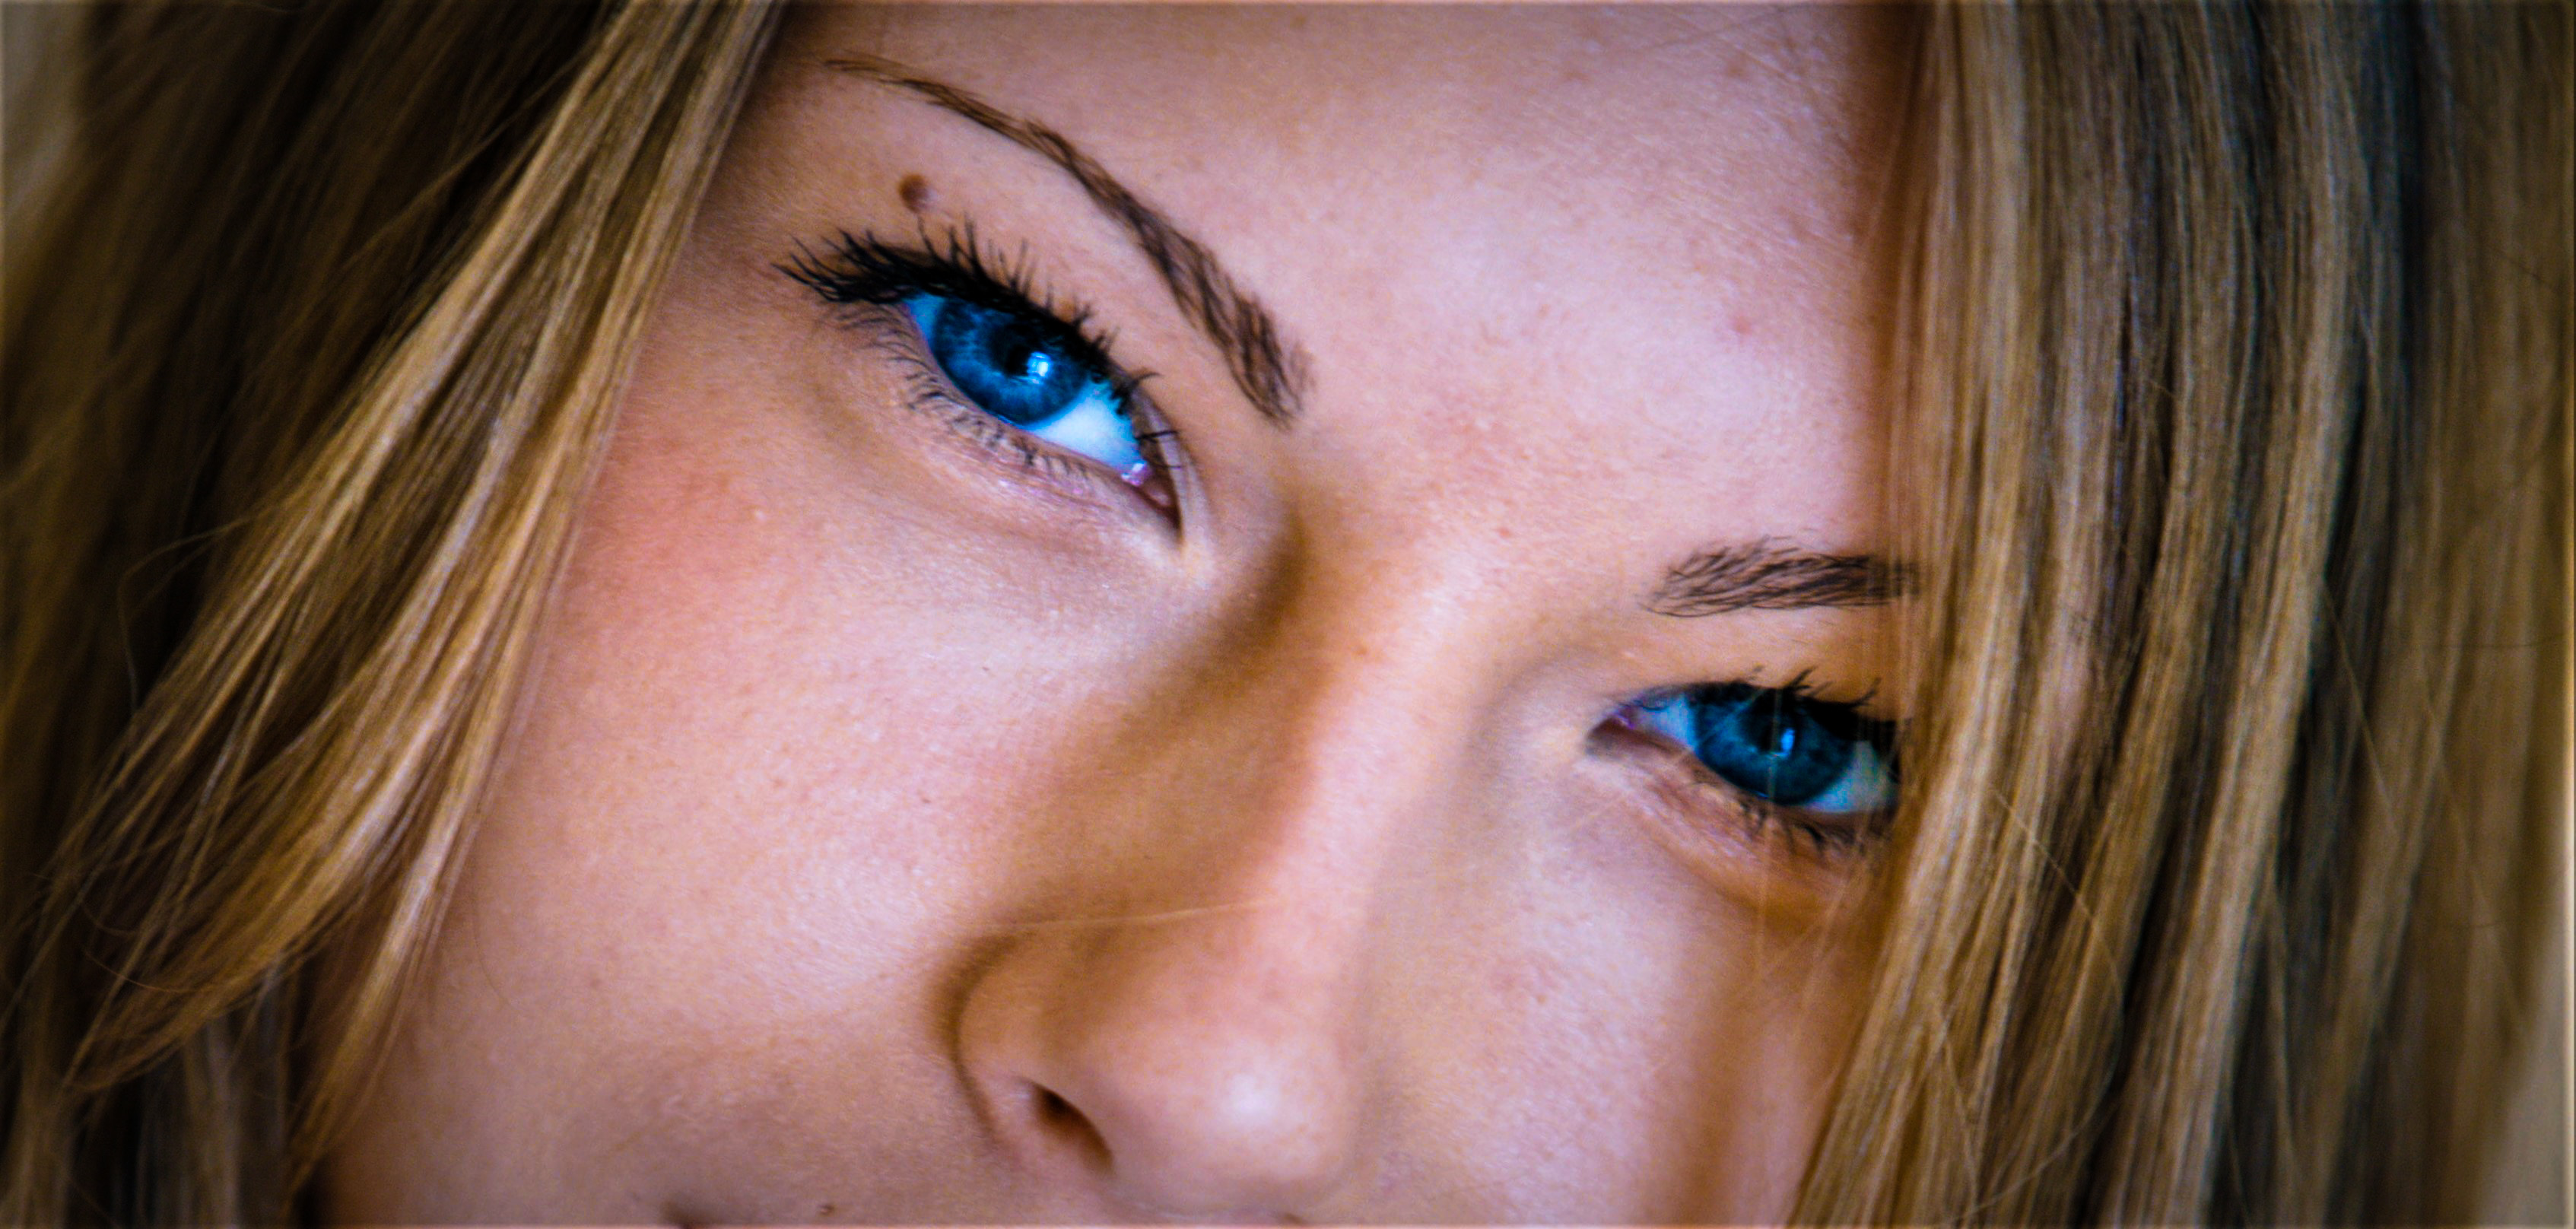 krystal boyd, women, blue eyes, adults